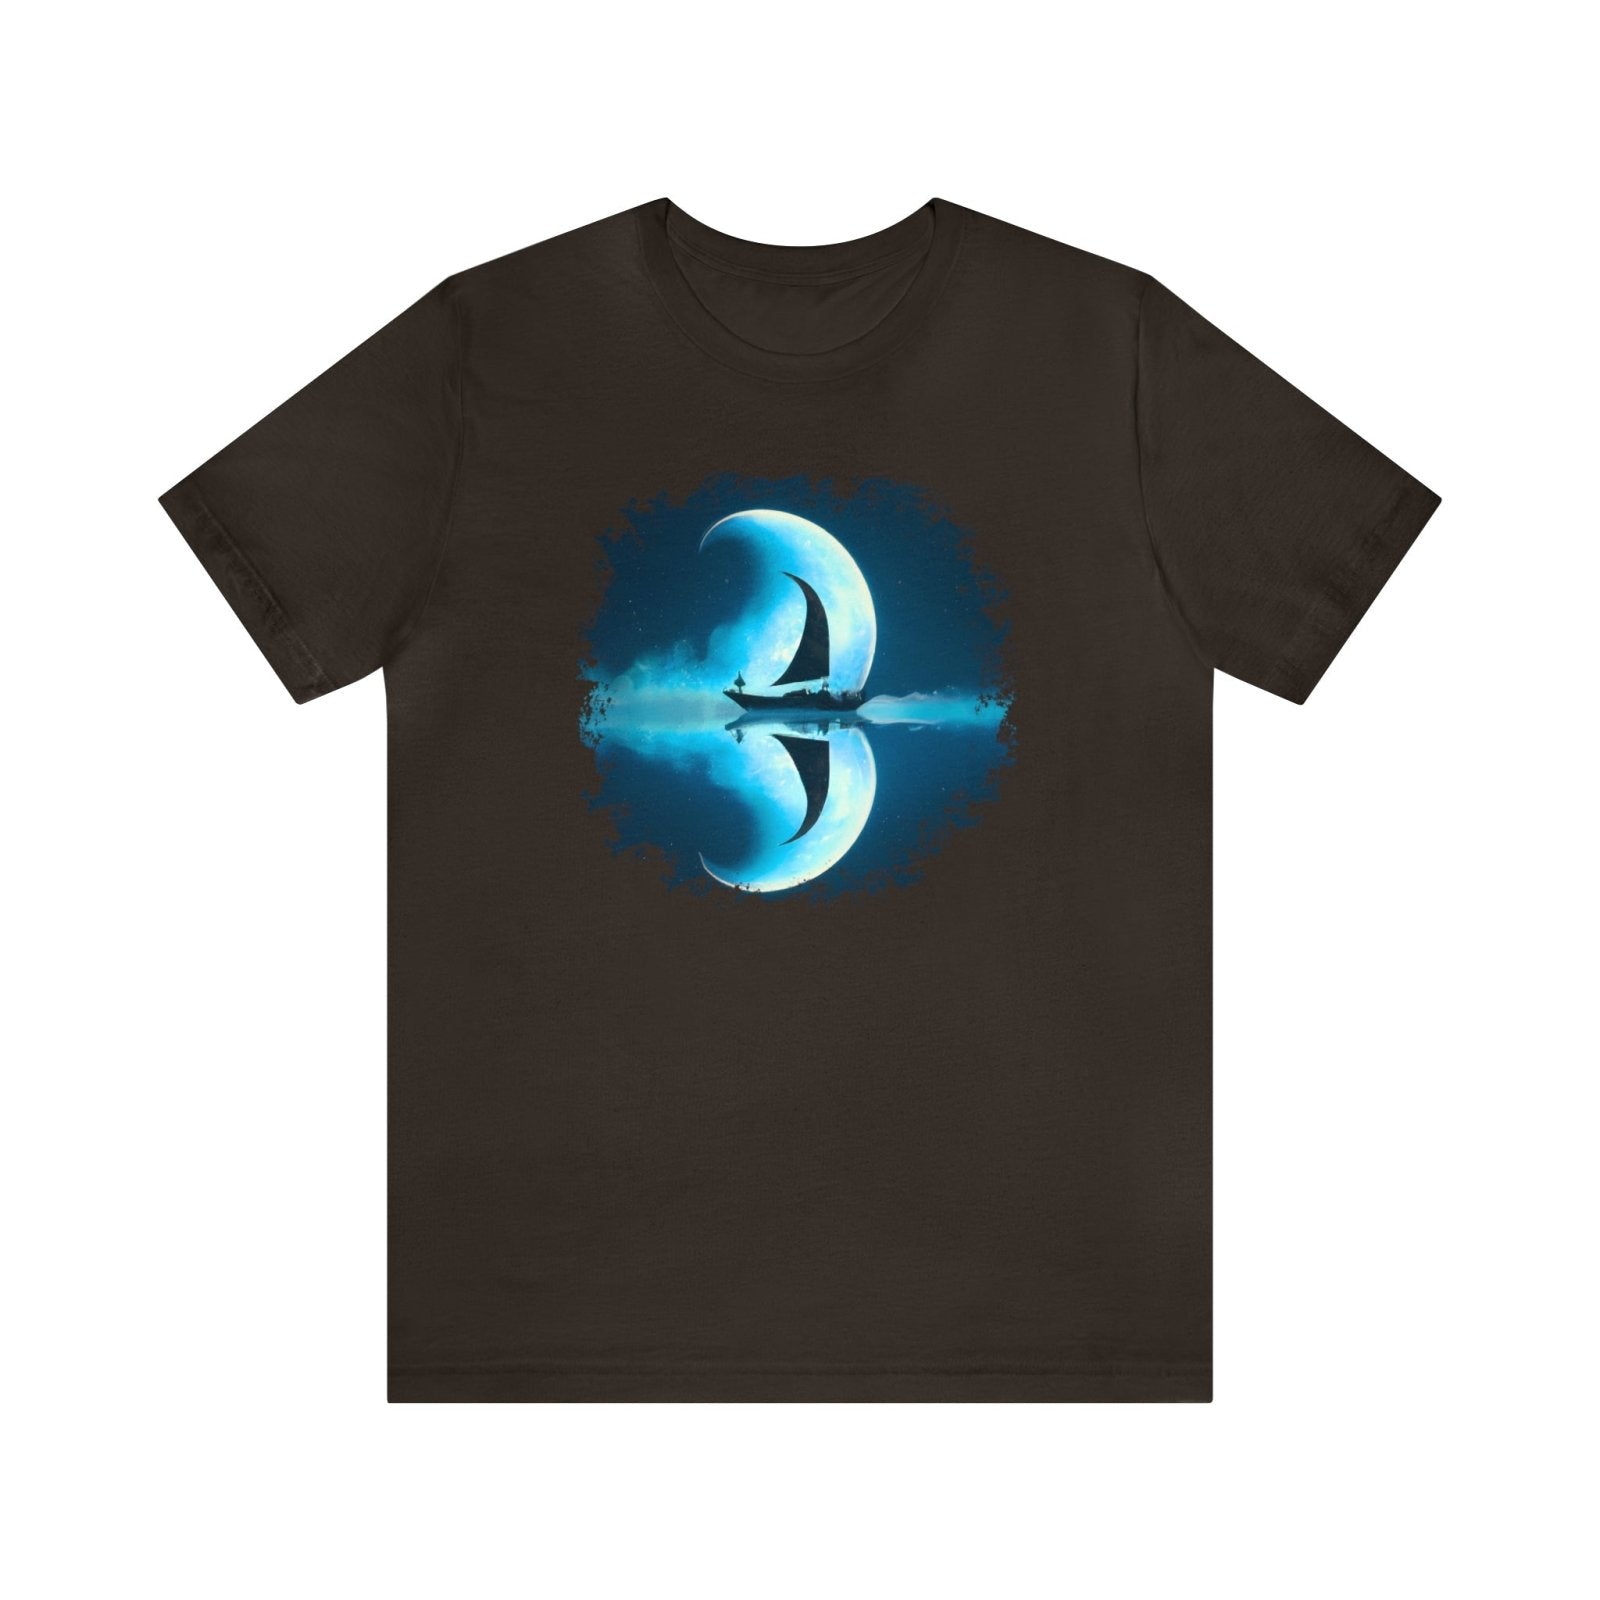 Sailing Through the Moon Unisex T-Shirt, sailboat art shirt, nautical apparel, Brown - Subtle Blue M